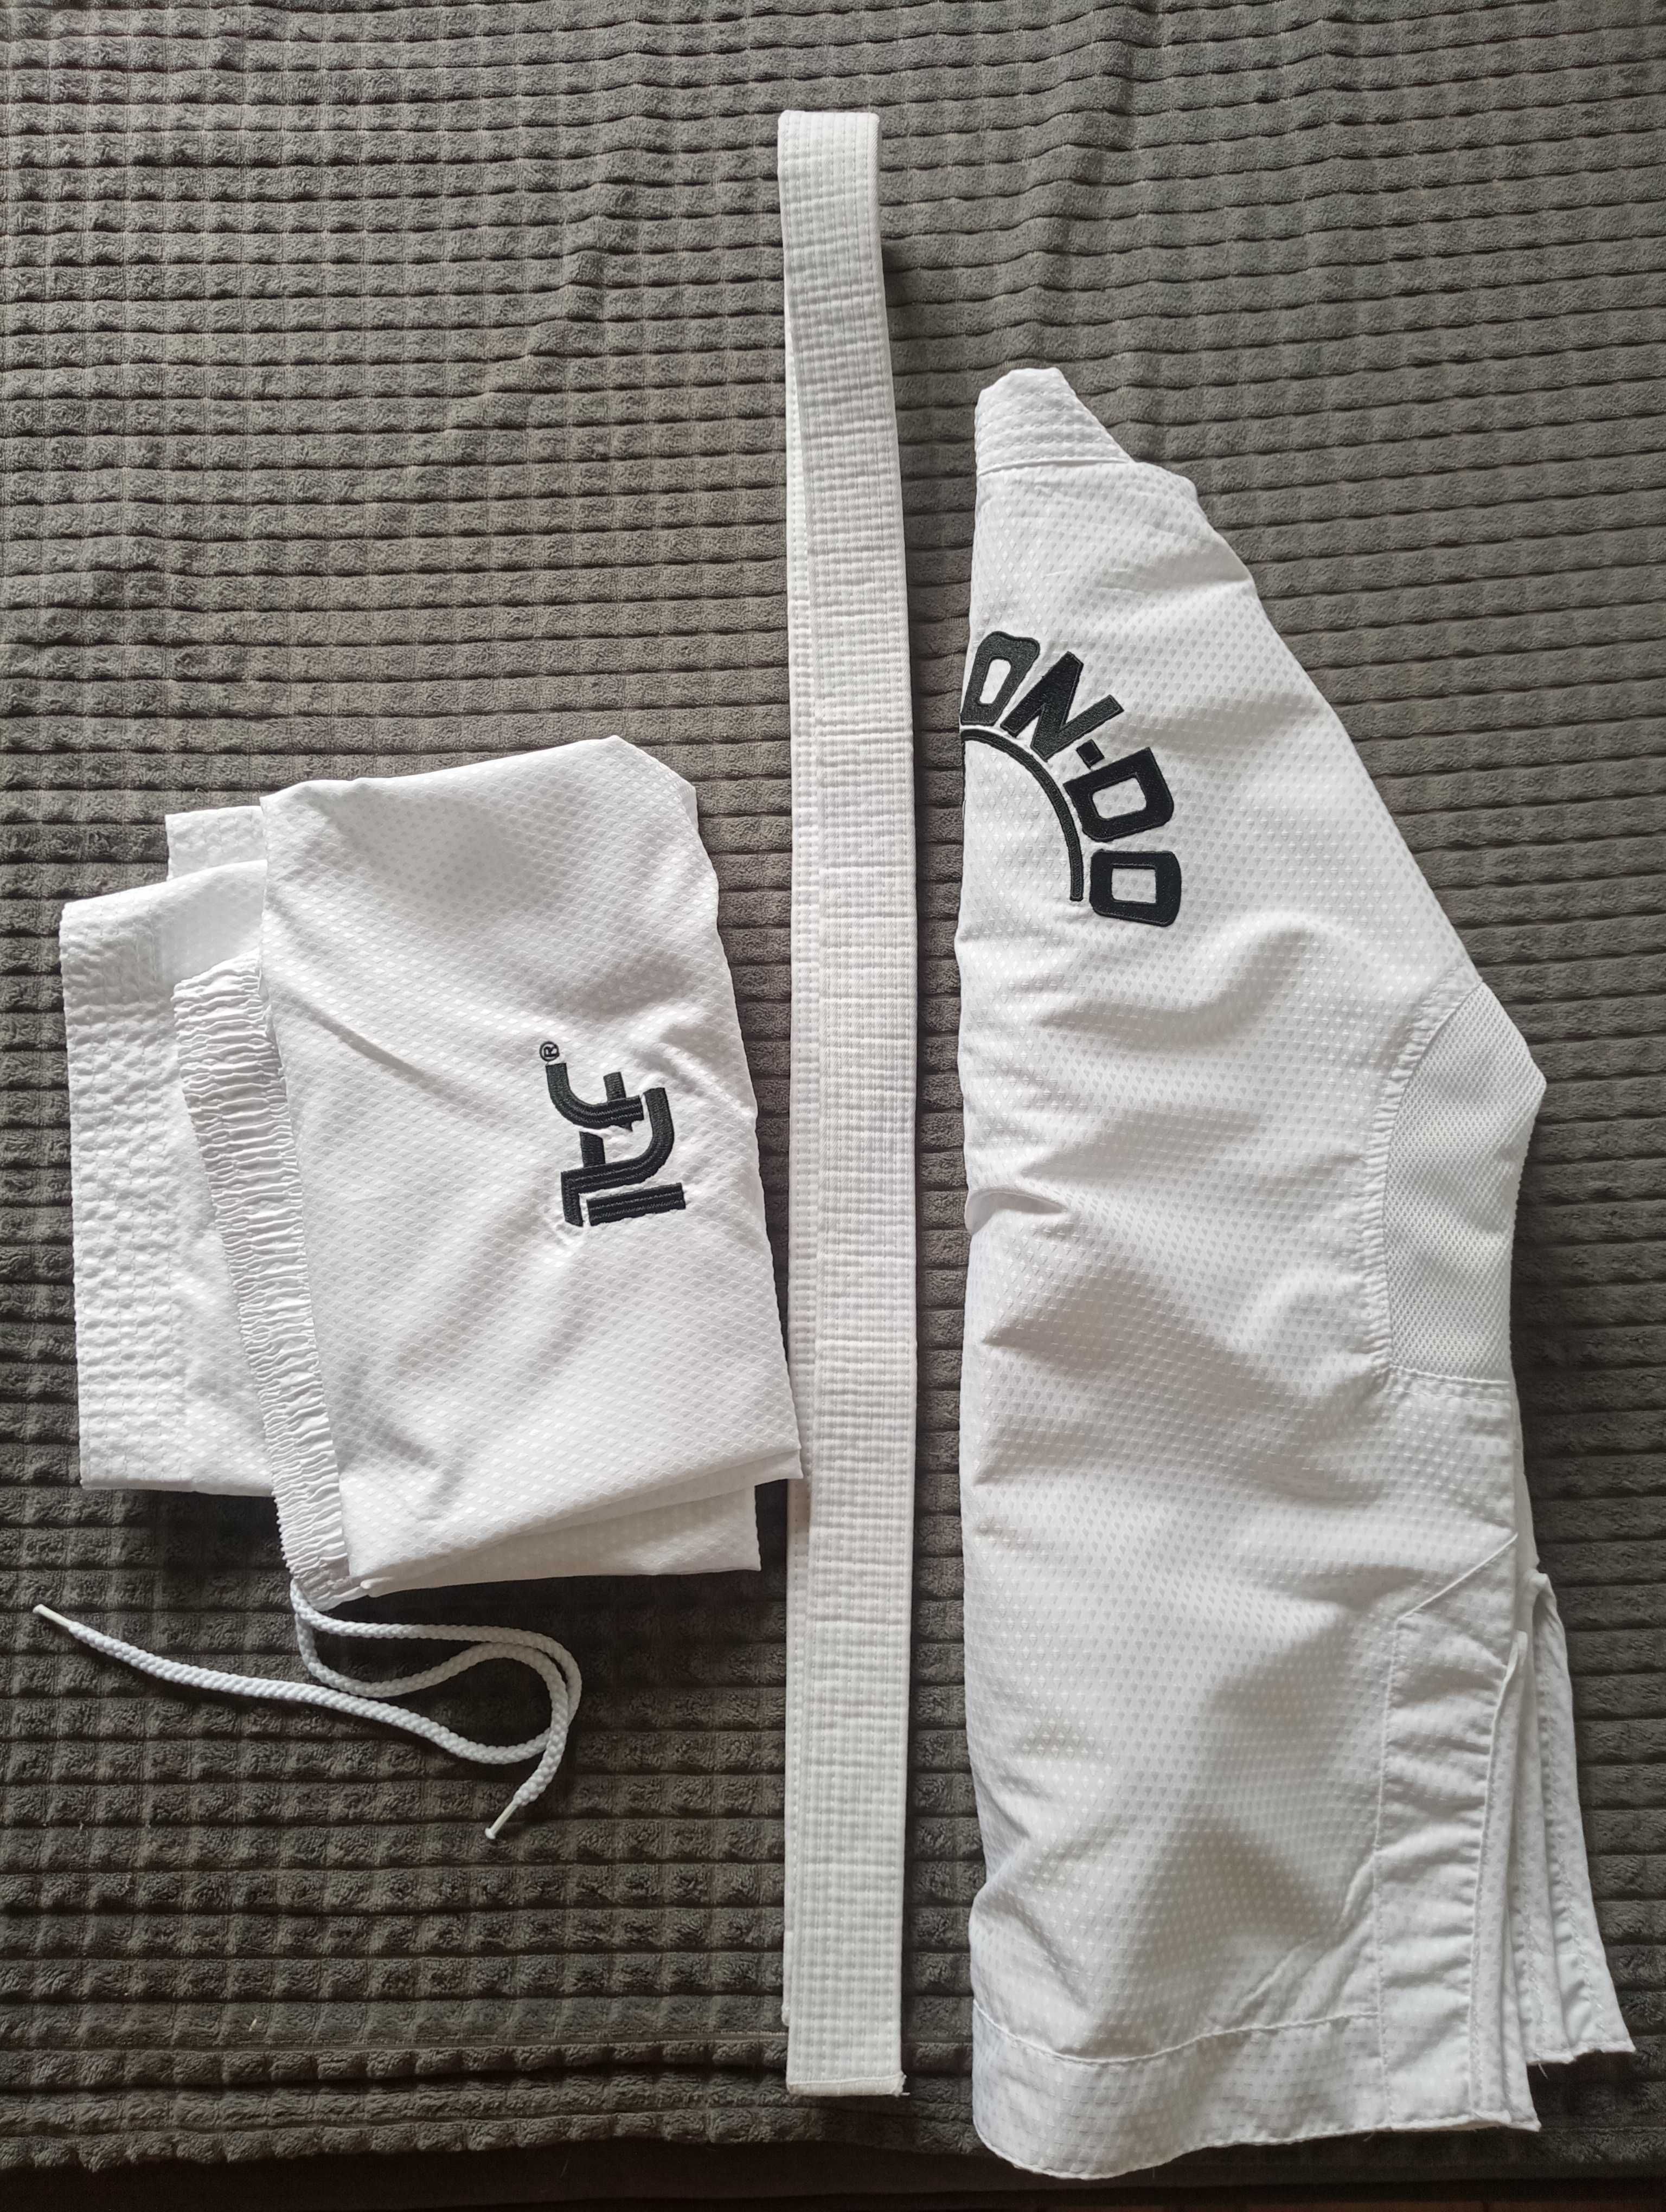 Do-bok teakwondo